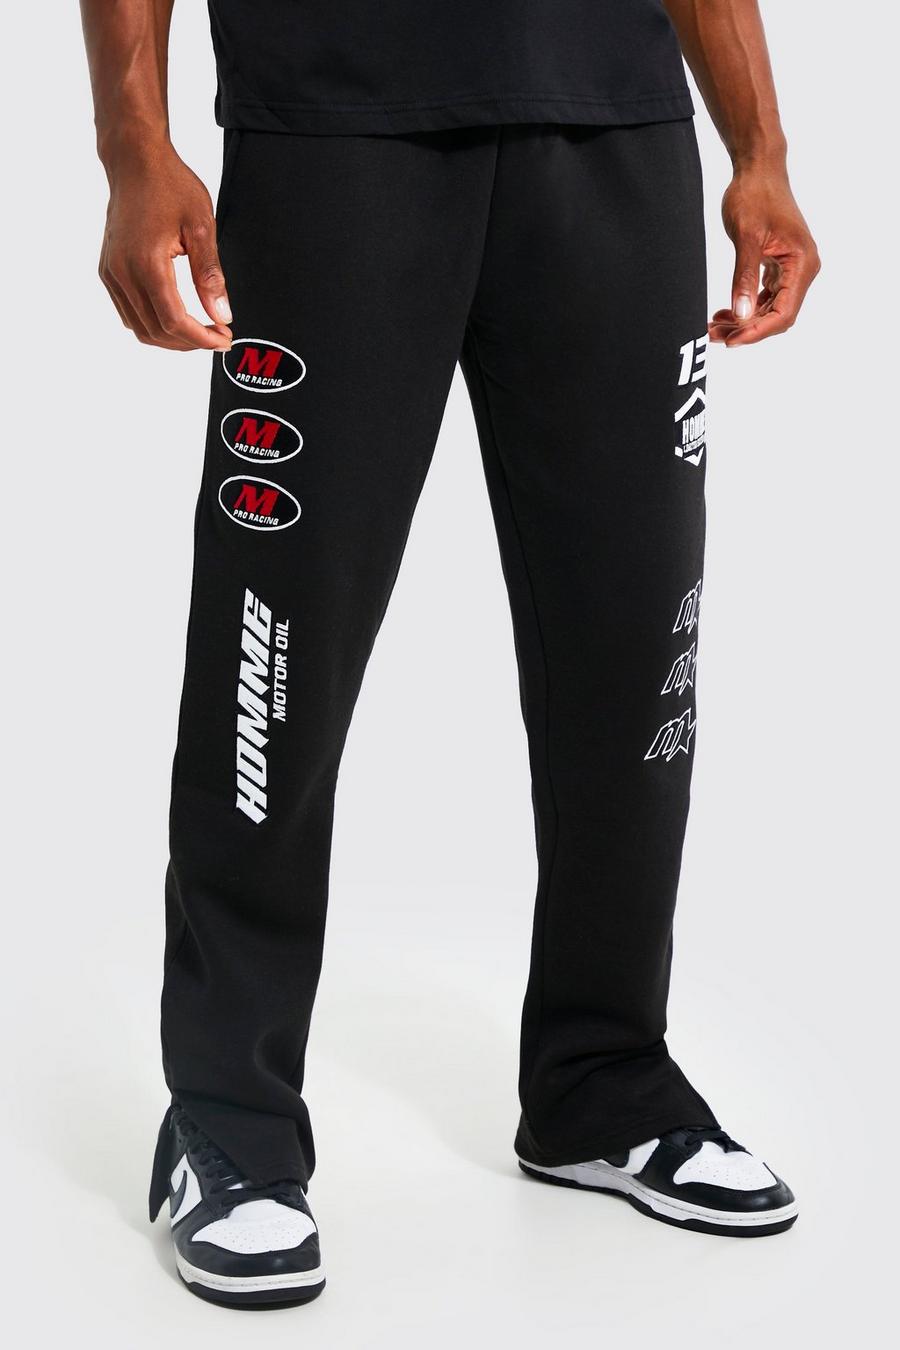 Pantalón deportivo con abertura en el bajo y estampado de motociclismo, Black nero